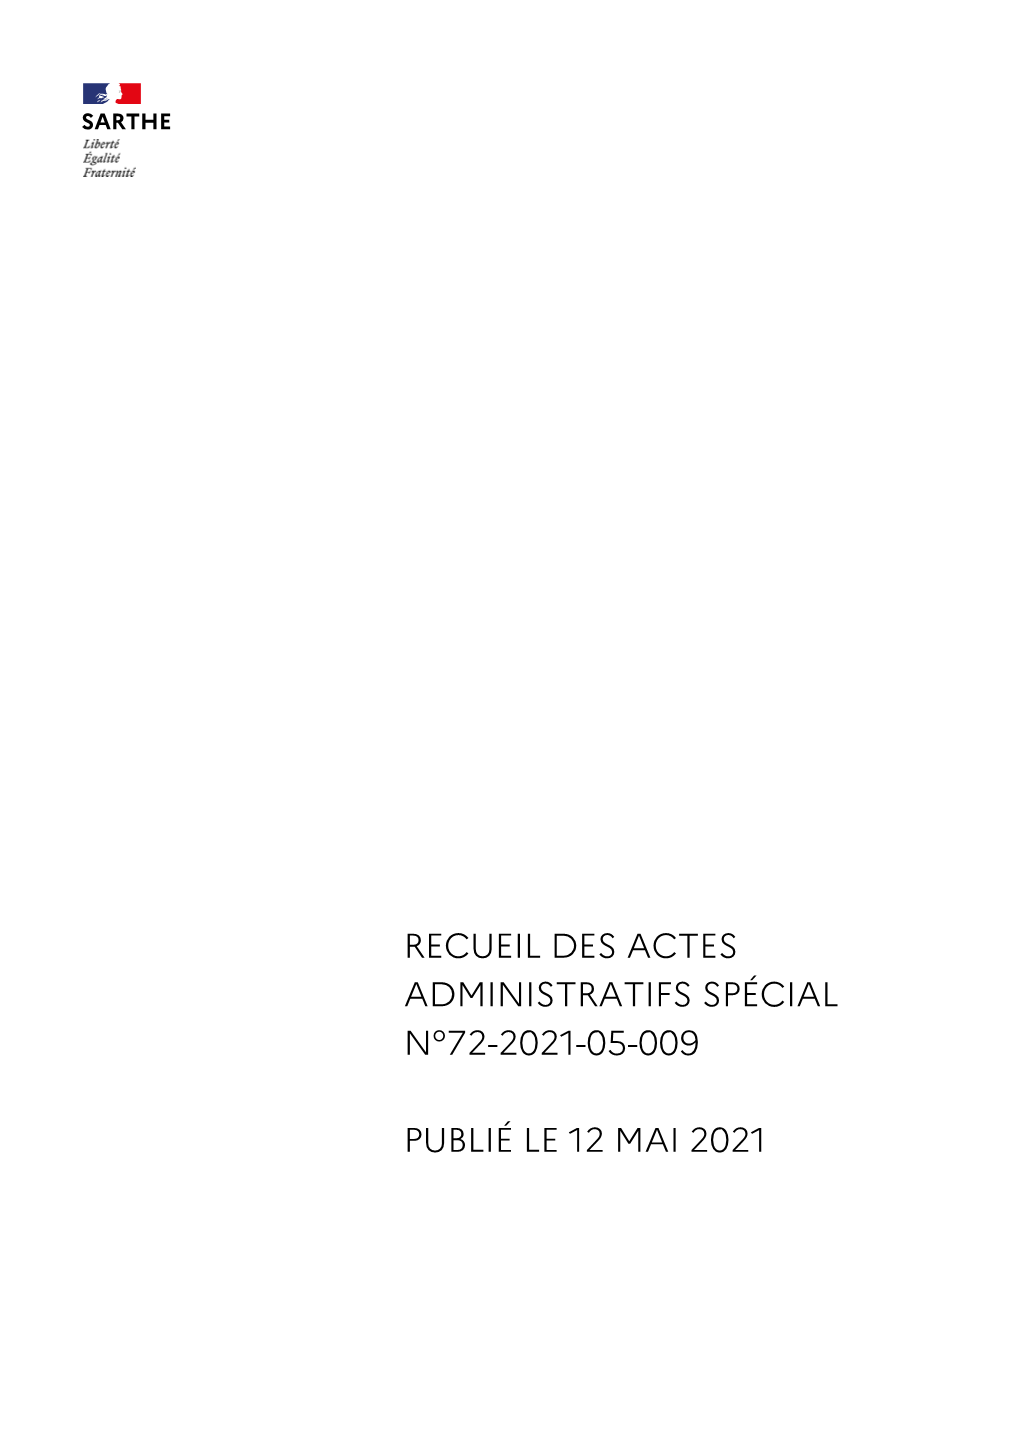 Recueil Des Actes Administratifs Spécial N°72-2021-05-009 Publié Le 12